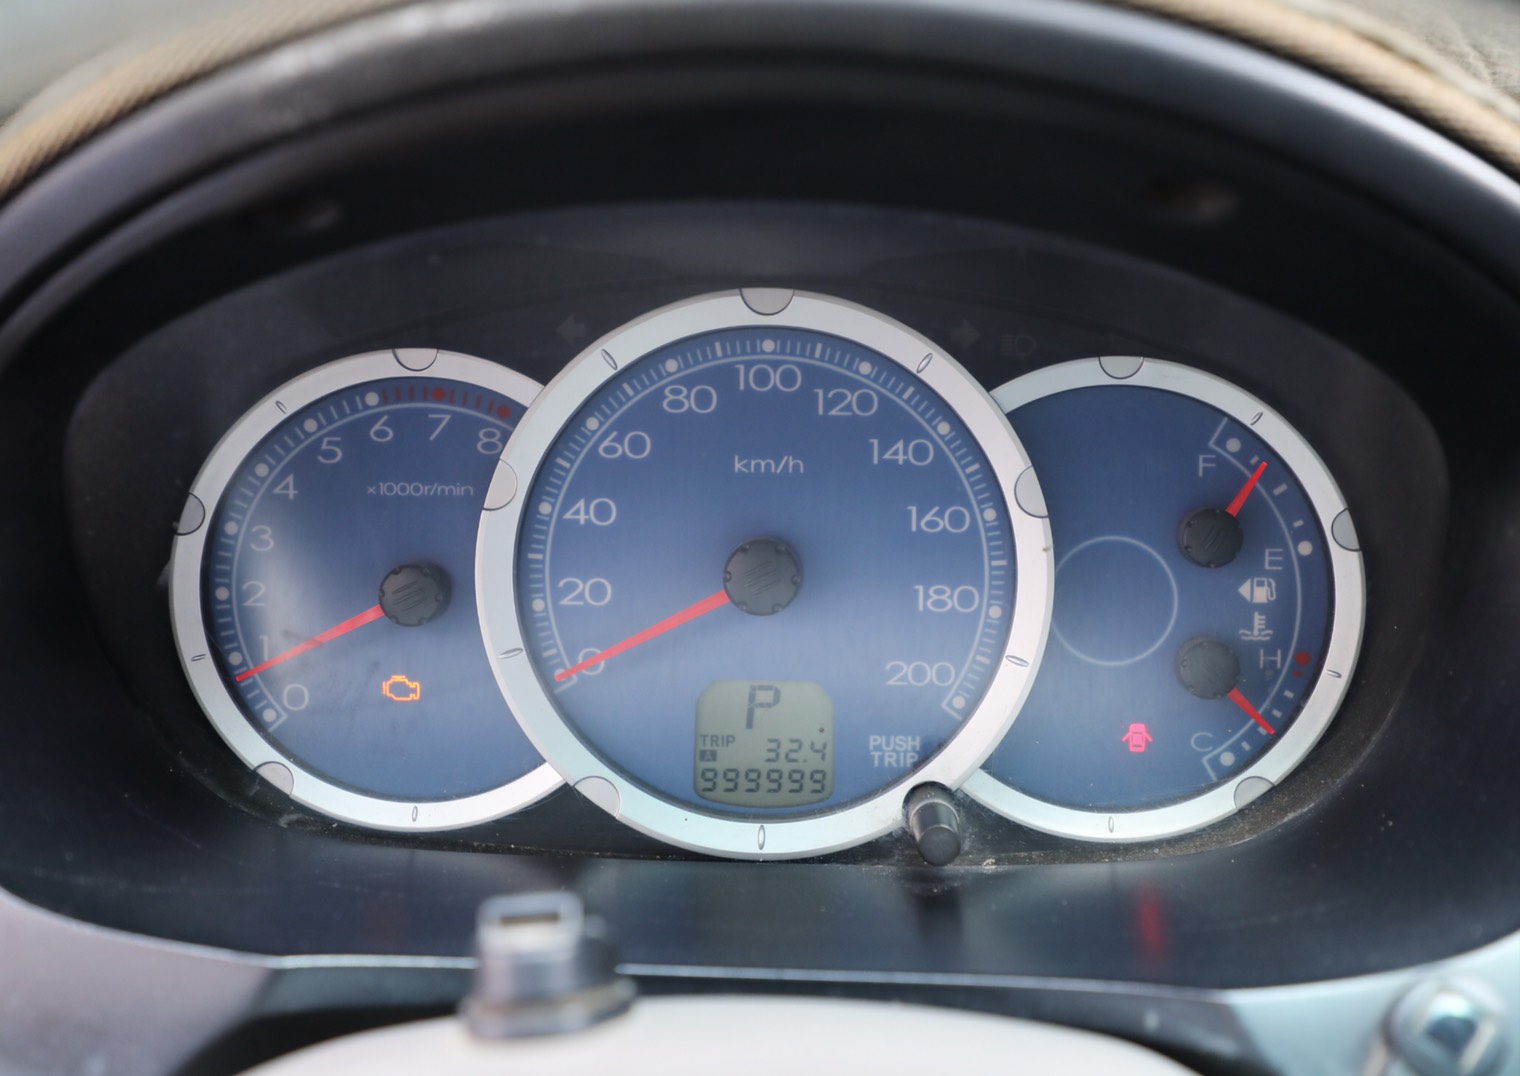 Zinger 里程表停留在 999999 公里輝煌紀錄，車主期望再創第二個百萬公里。